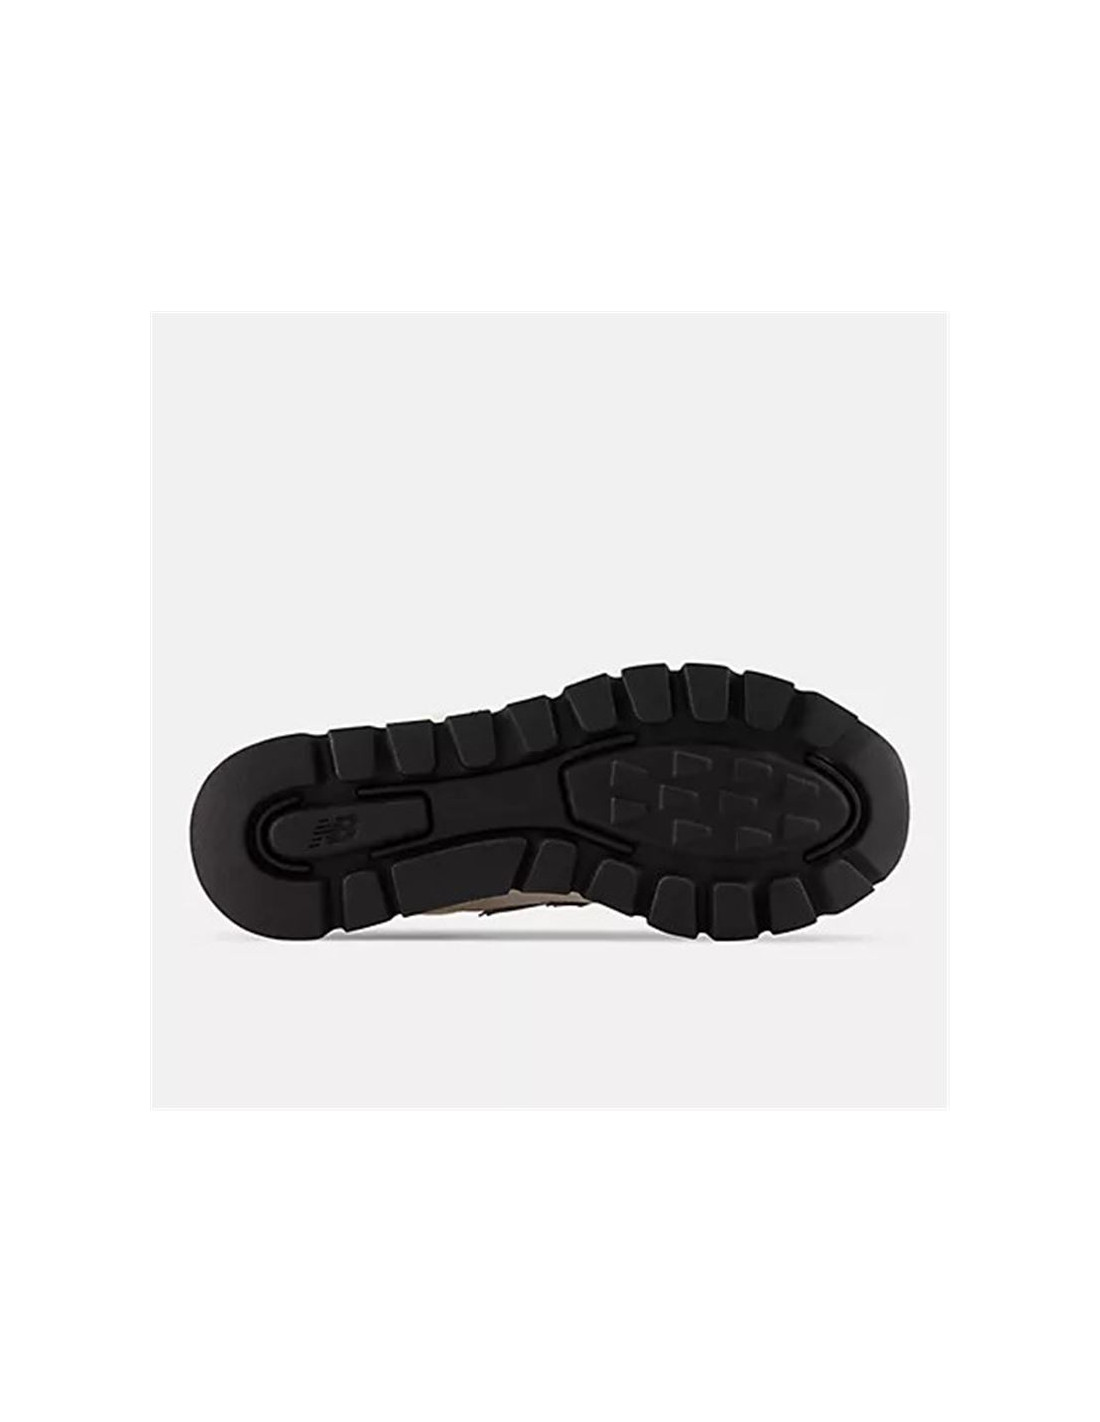 Contracción Amigo pimienta ᐈ Zapatillas New Balance 574 Rugged negro Hombre – Atmosfera Sport©